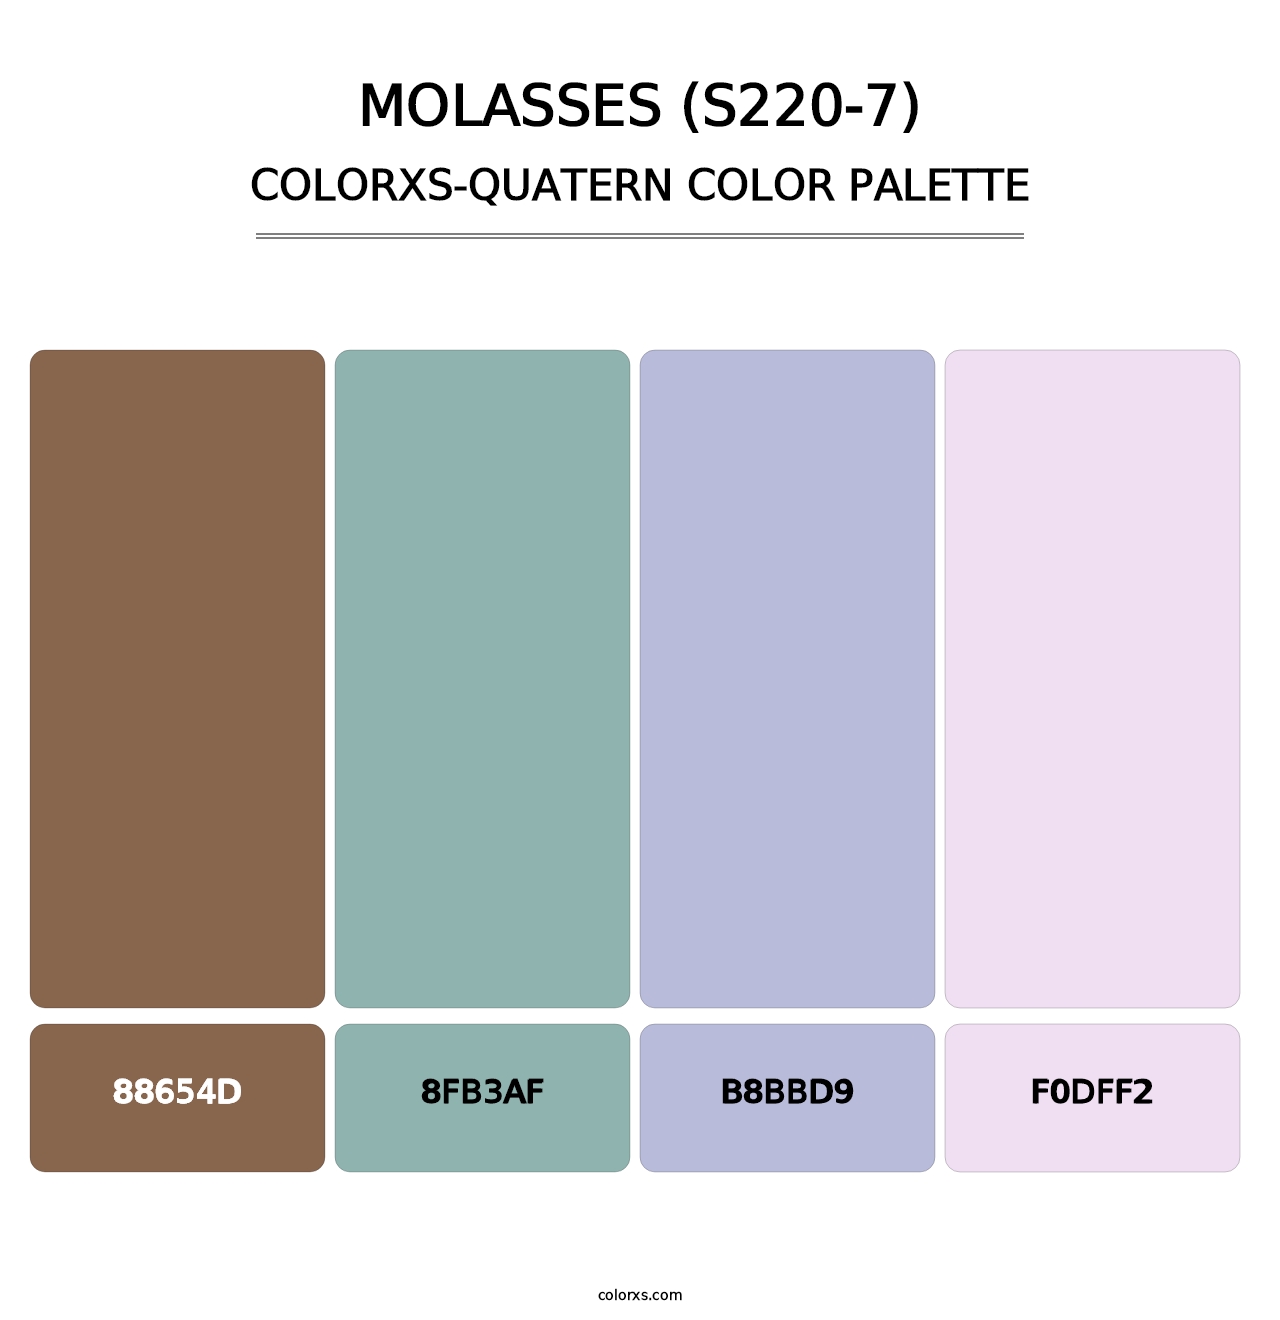 Molasses (S220-7) - Colorxs Quatern Palette